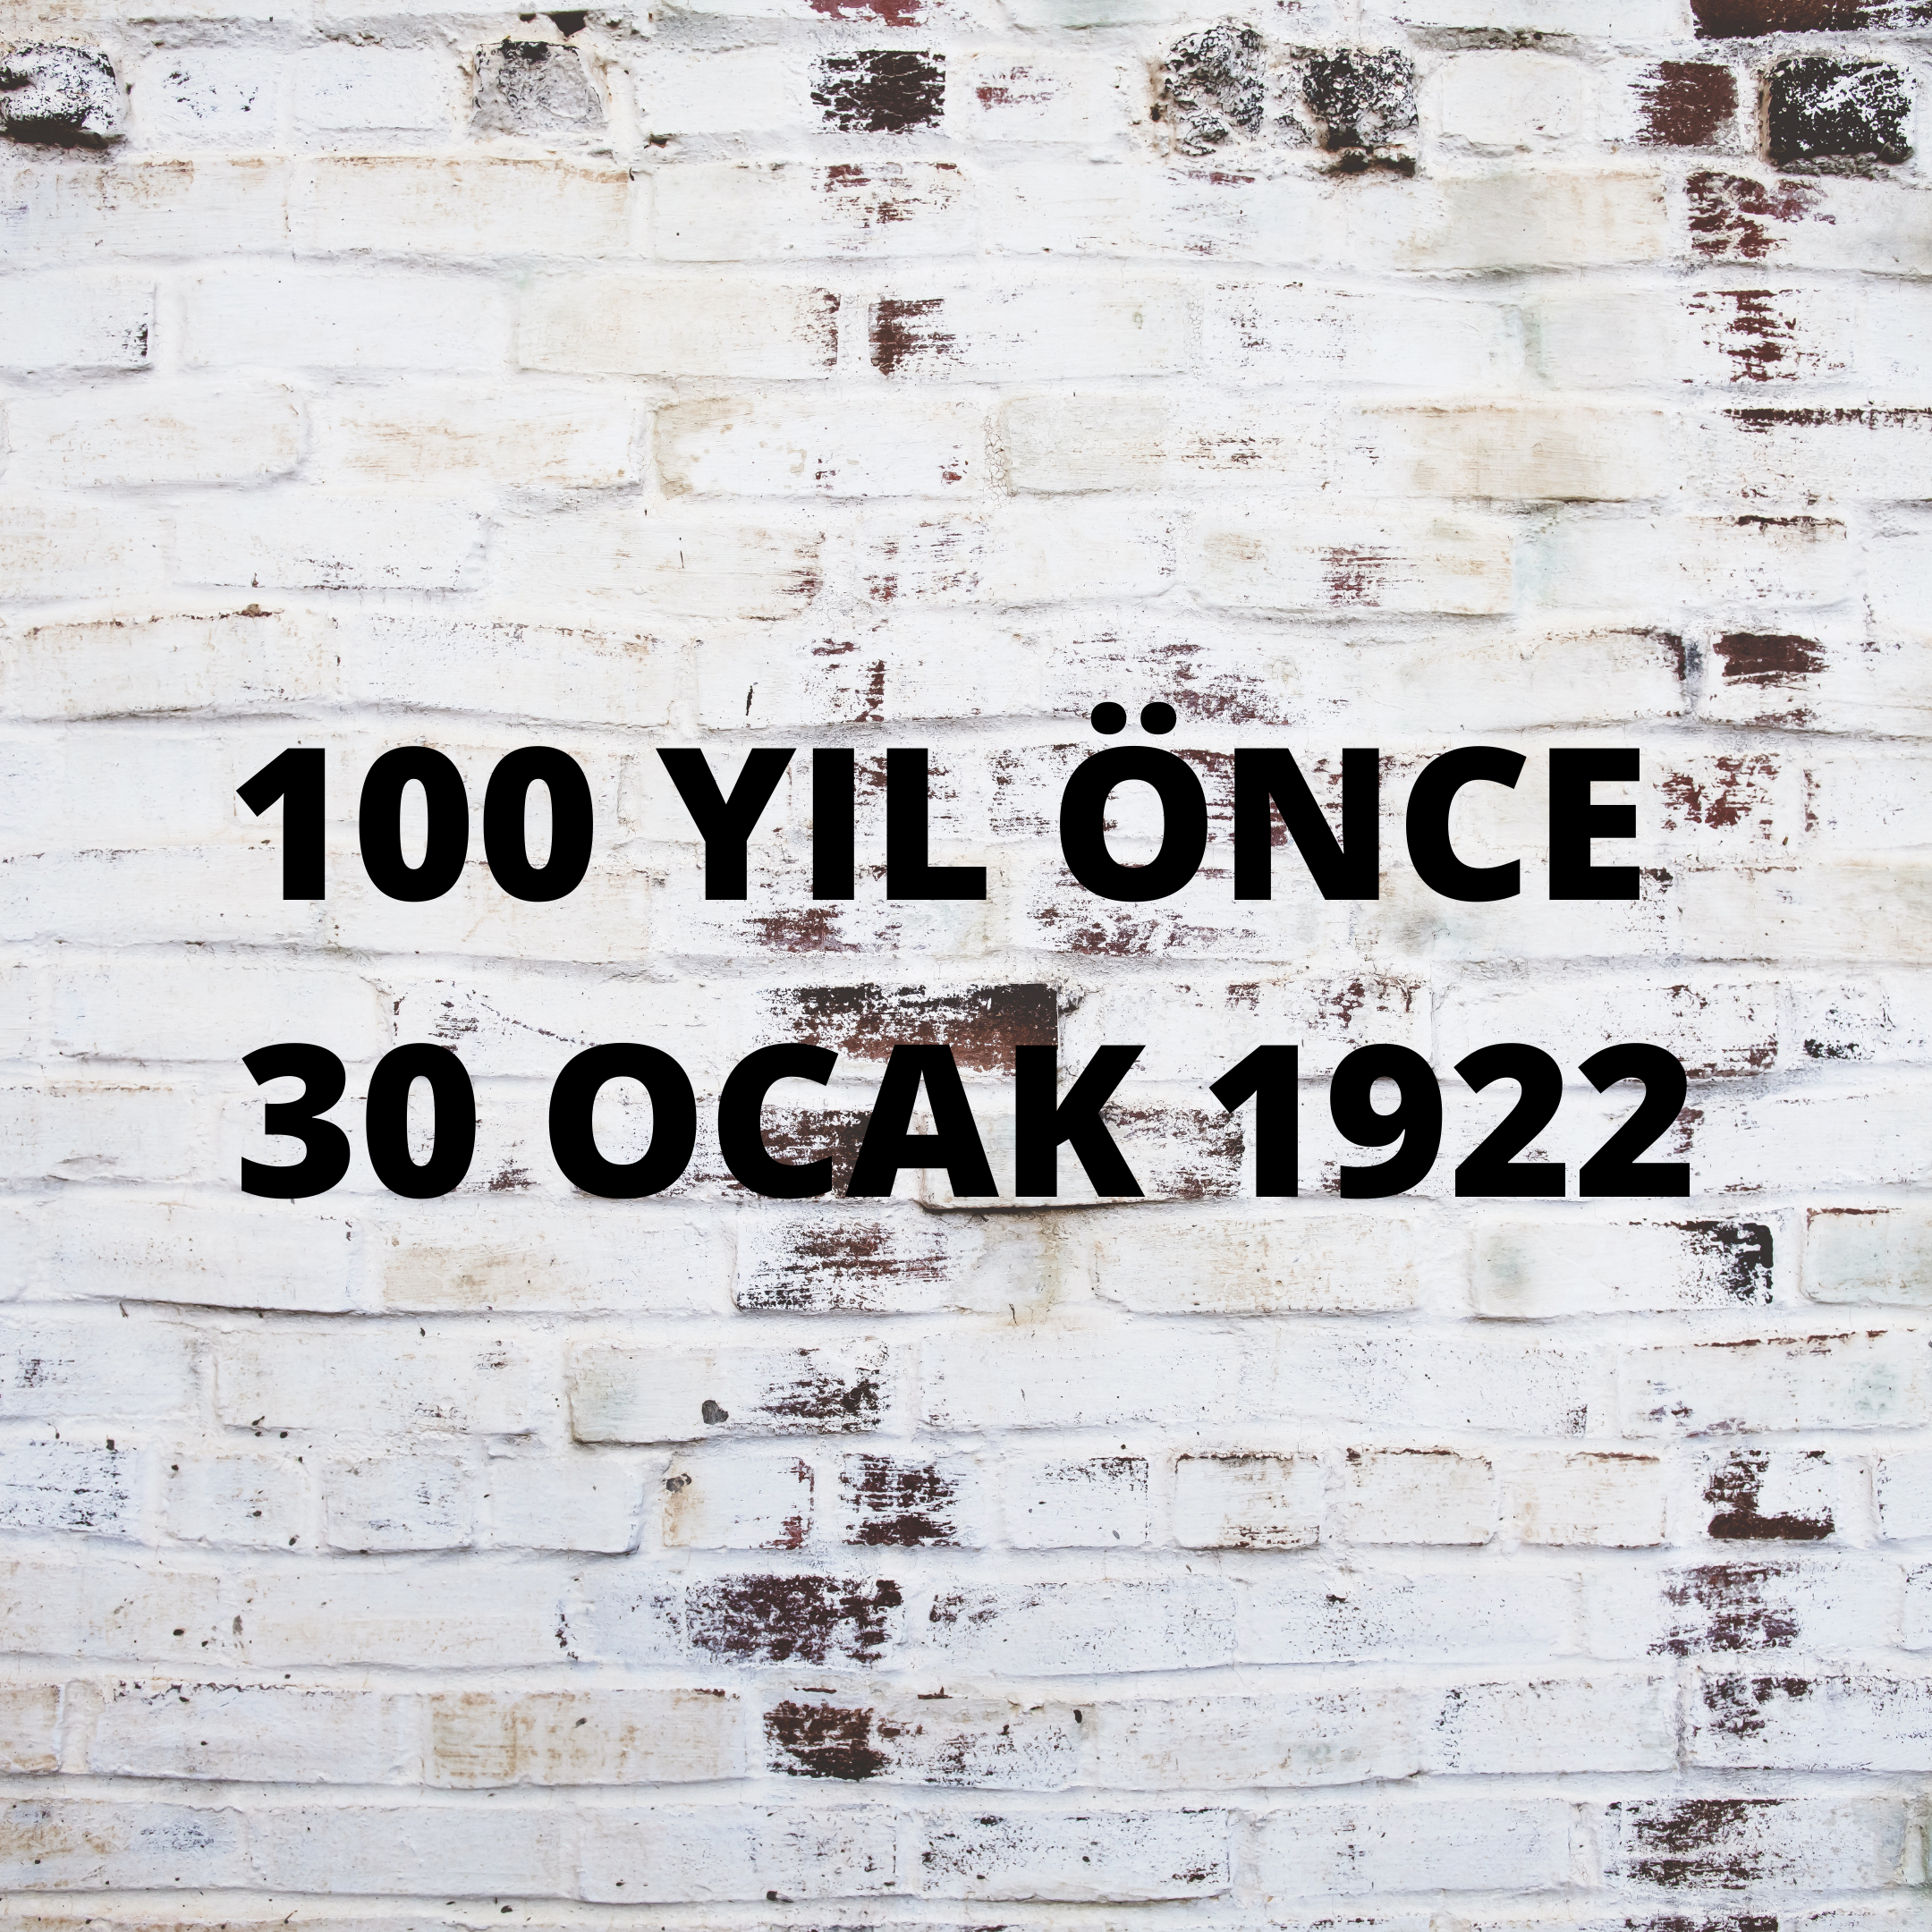 100 YIL ÖNCE 30 OCAK 1922